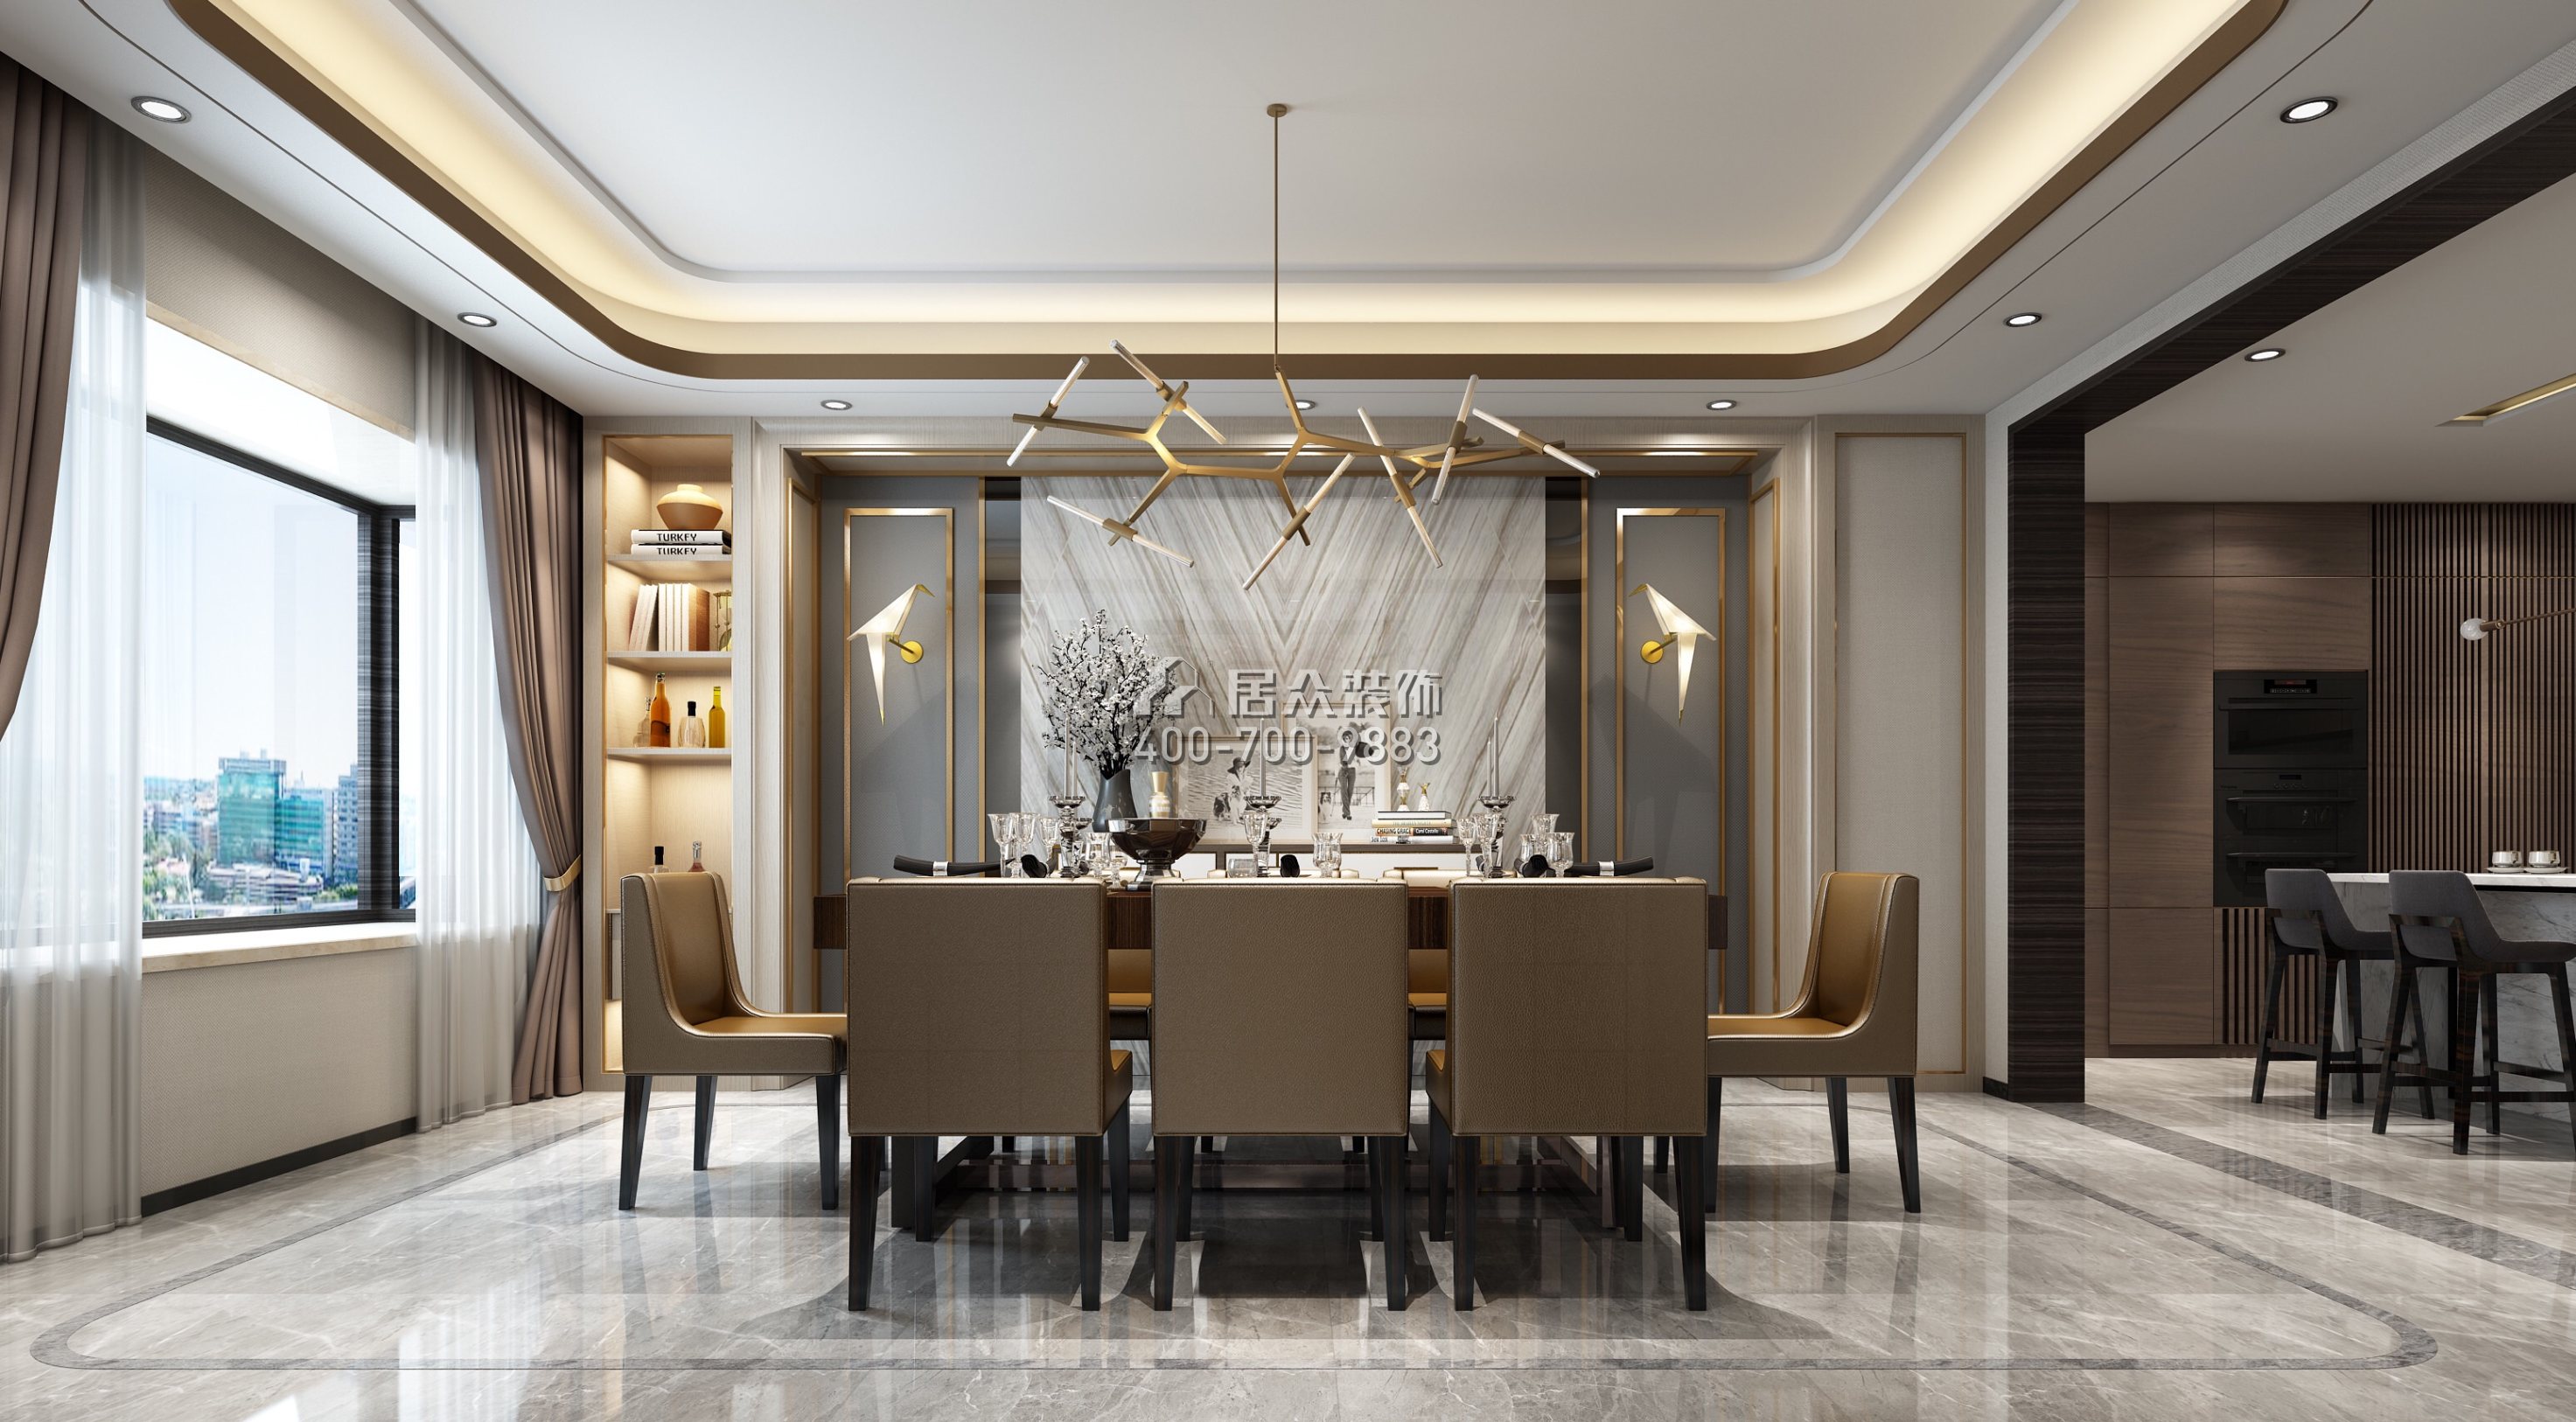 安柏麗晶180平方米現代簡約風格平層戶型餐廳裝修效果圖